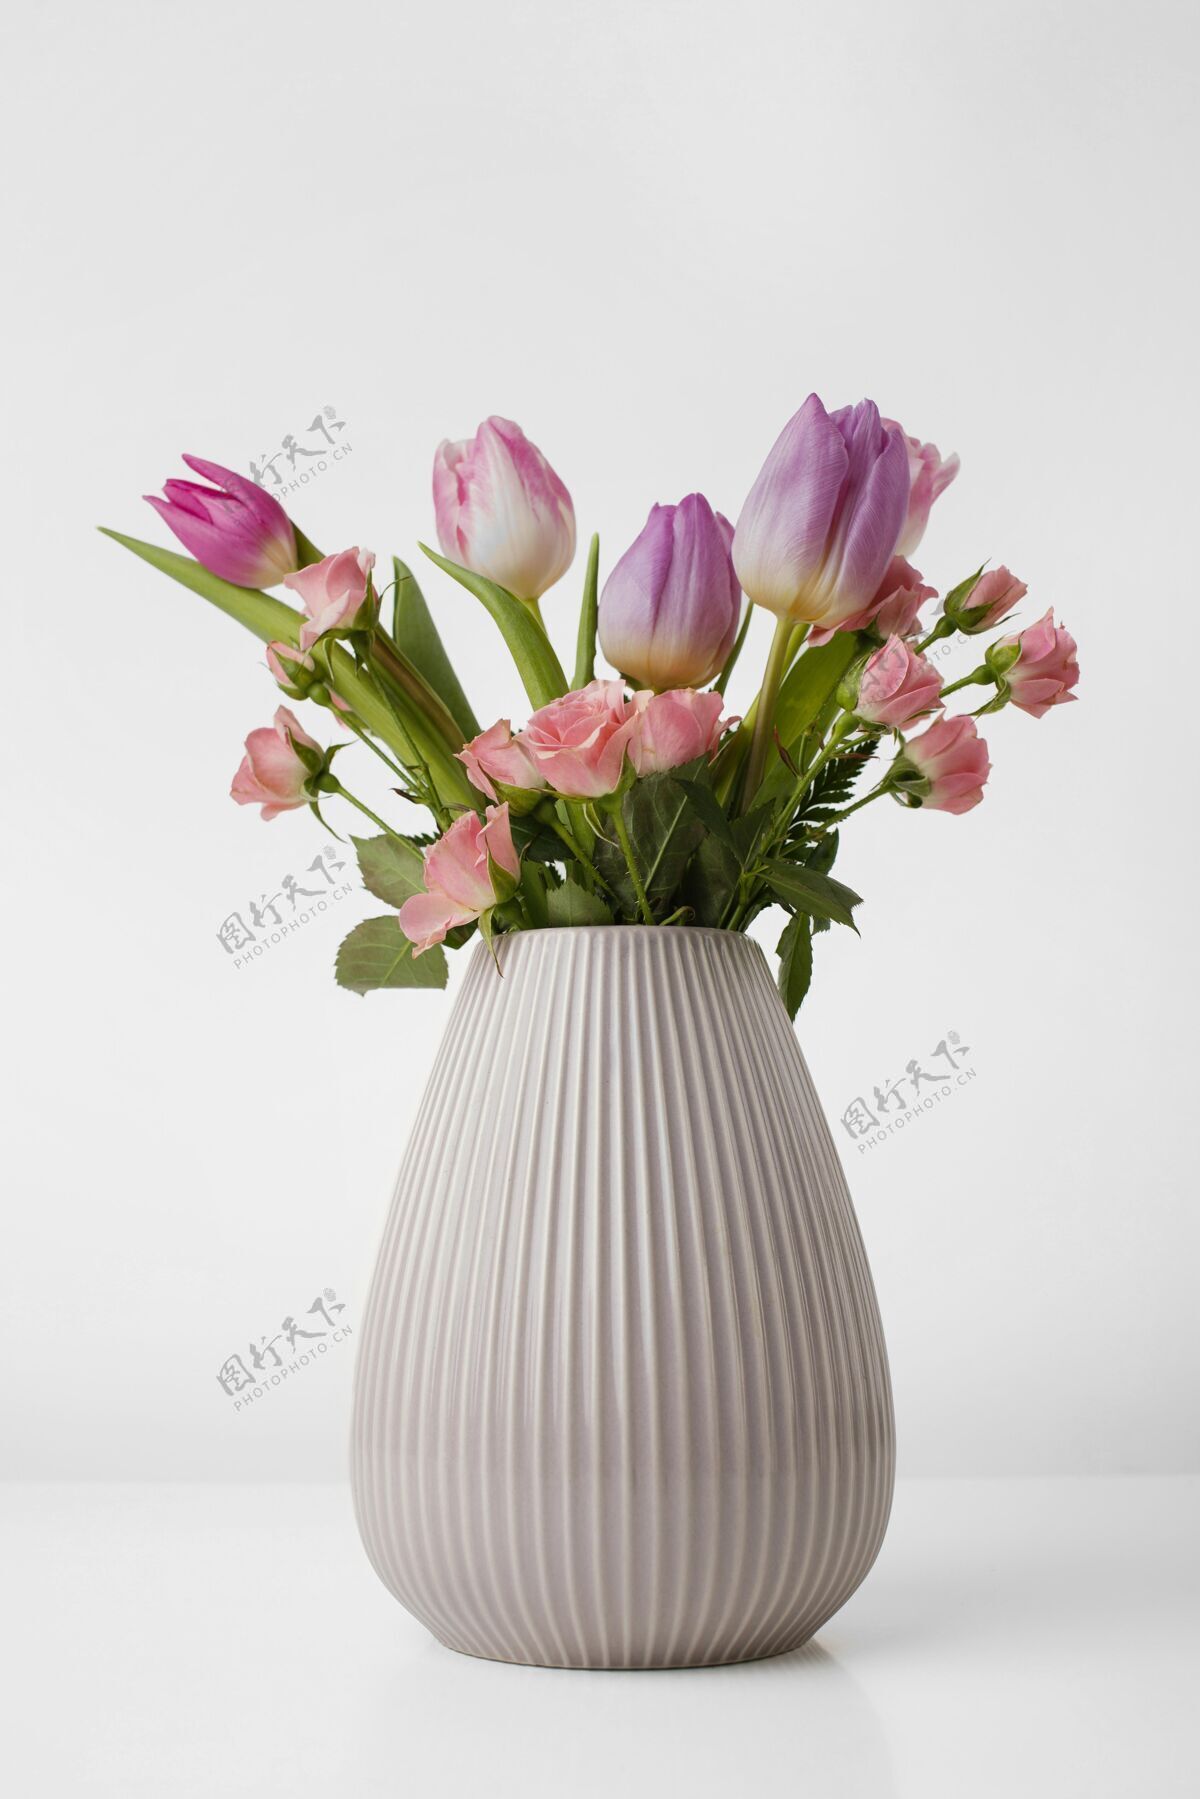 花有郁金香和玫瑰的花瓶花瓶开花郁金香